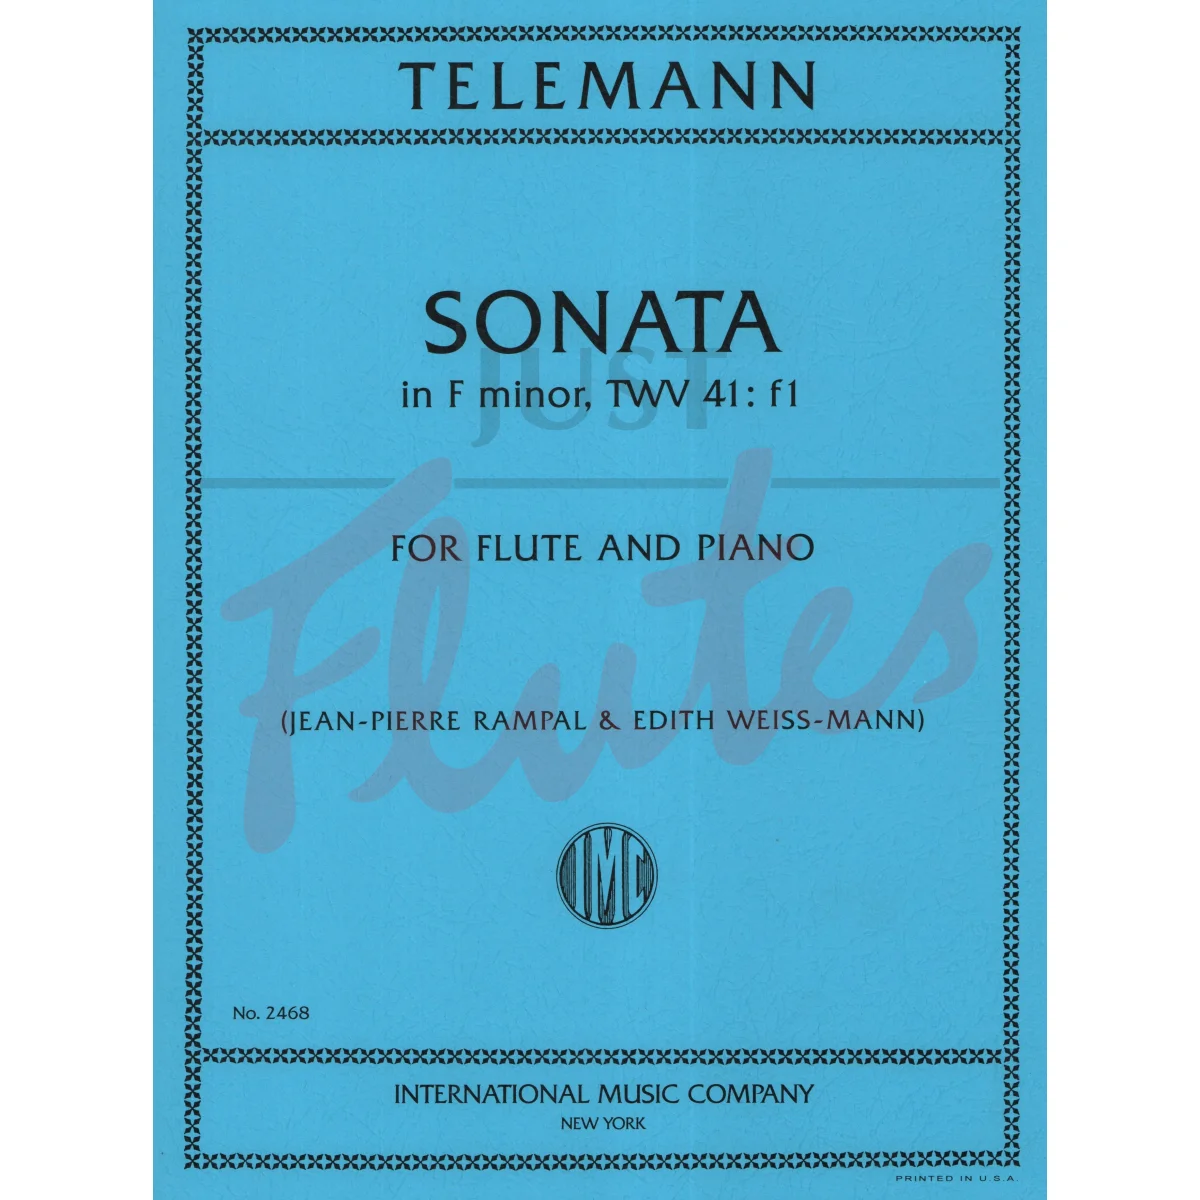 Sonata in F minor for Flute and Piano